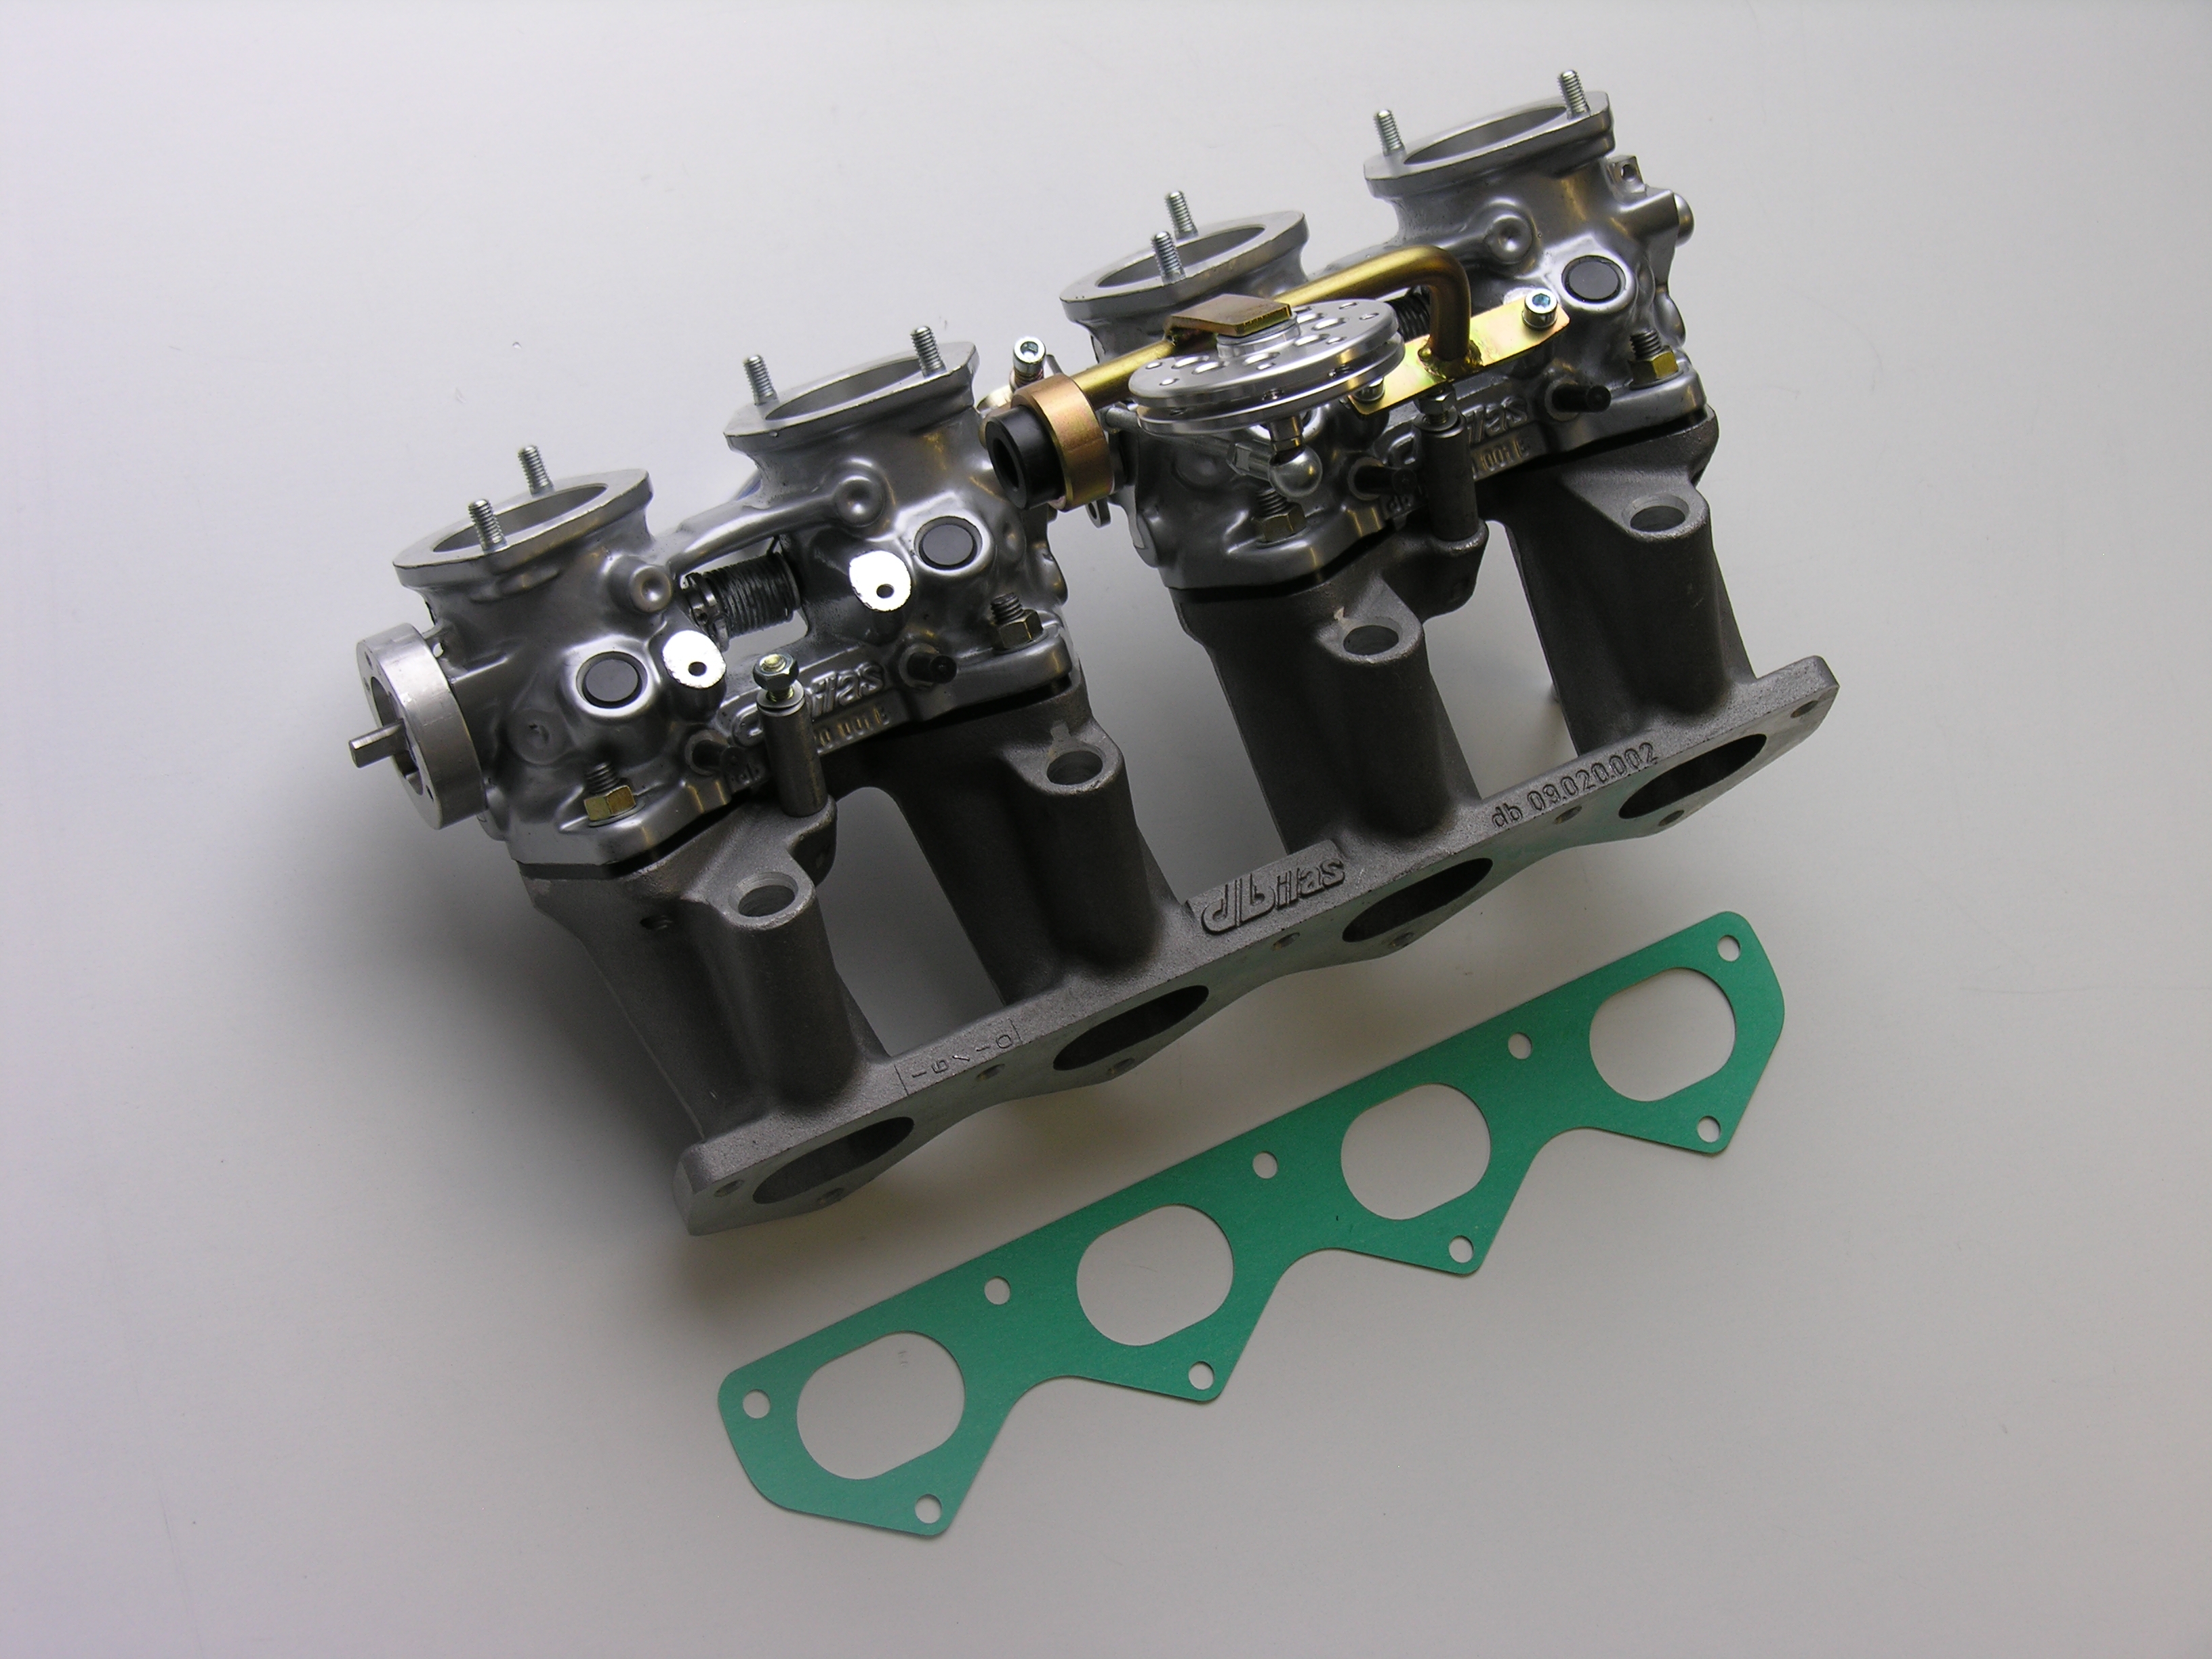 Mutli-throttle intake system for racing  for Citroen / Peugeot  TU5J4 1,6 16V 87-88kW